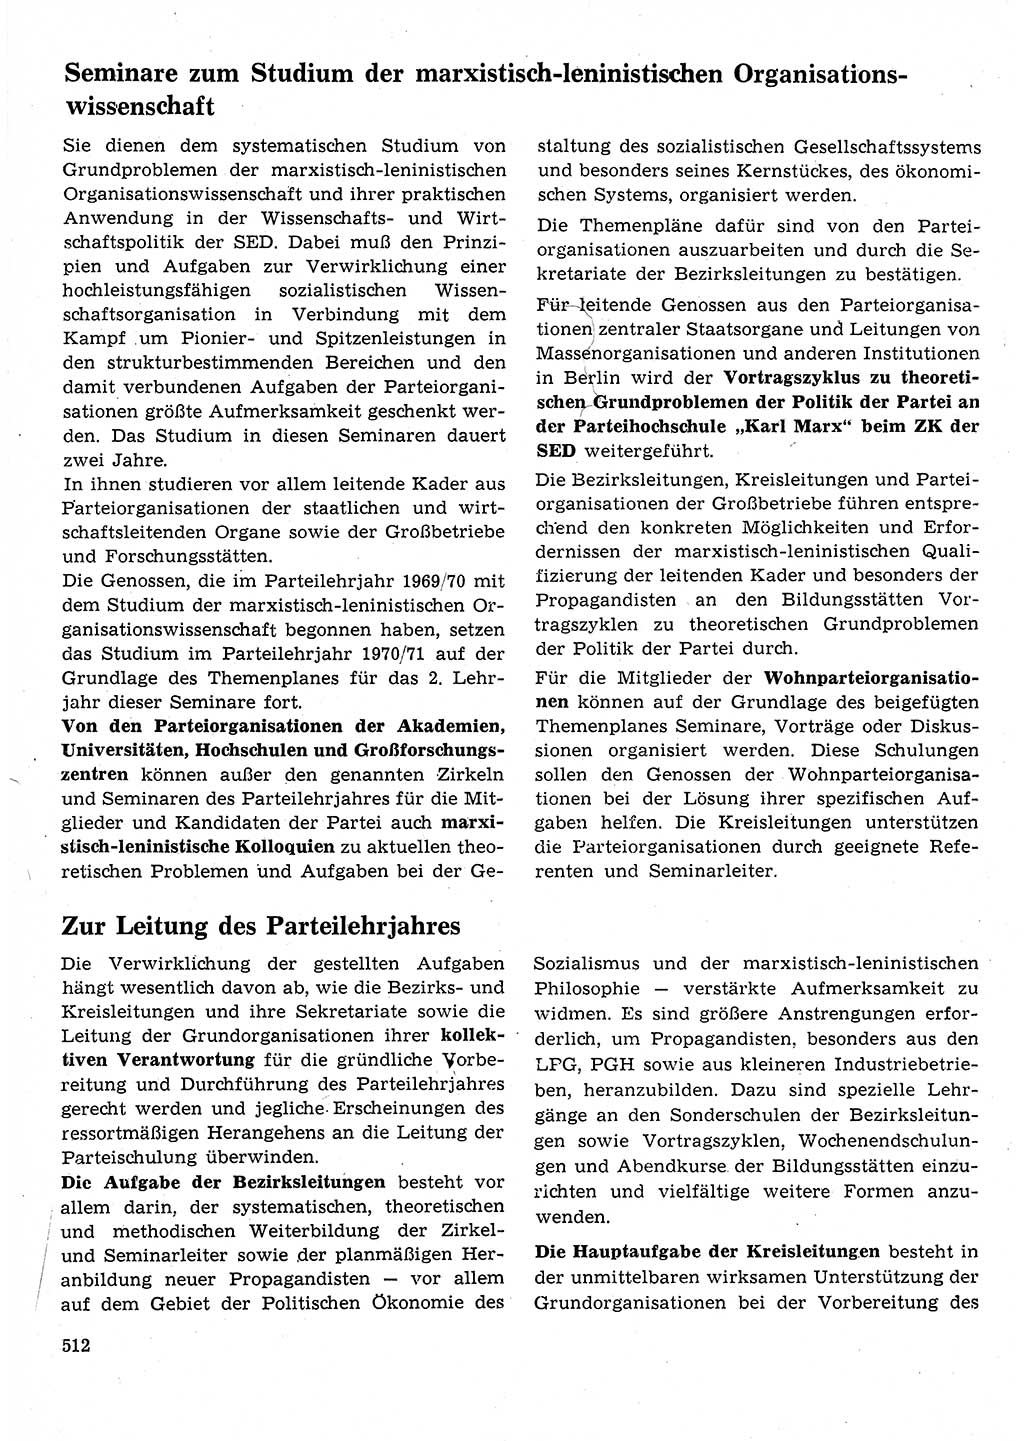 Neuer Weg (NW), Organ des Zentralkomitees (ZK) der SED (Sozialistische Einheitspartei Deutschlands) für Fragen des Parteilebens, 25. Jahrgang [Deutsche Demokratische Republik (DDR)] 1970, Seite 512 (NW ZK SED DDR 1970, S. 512)